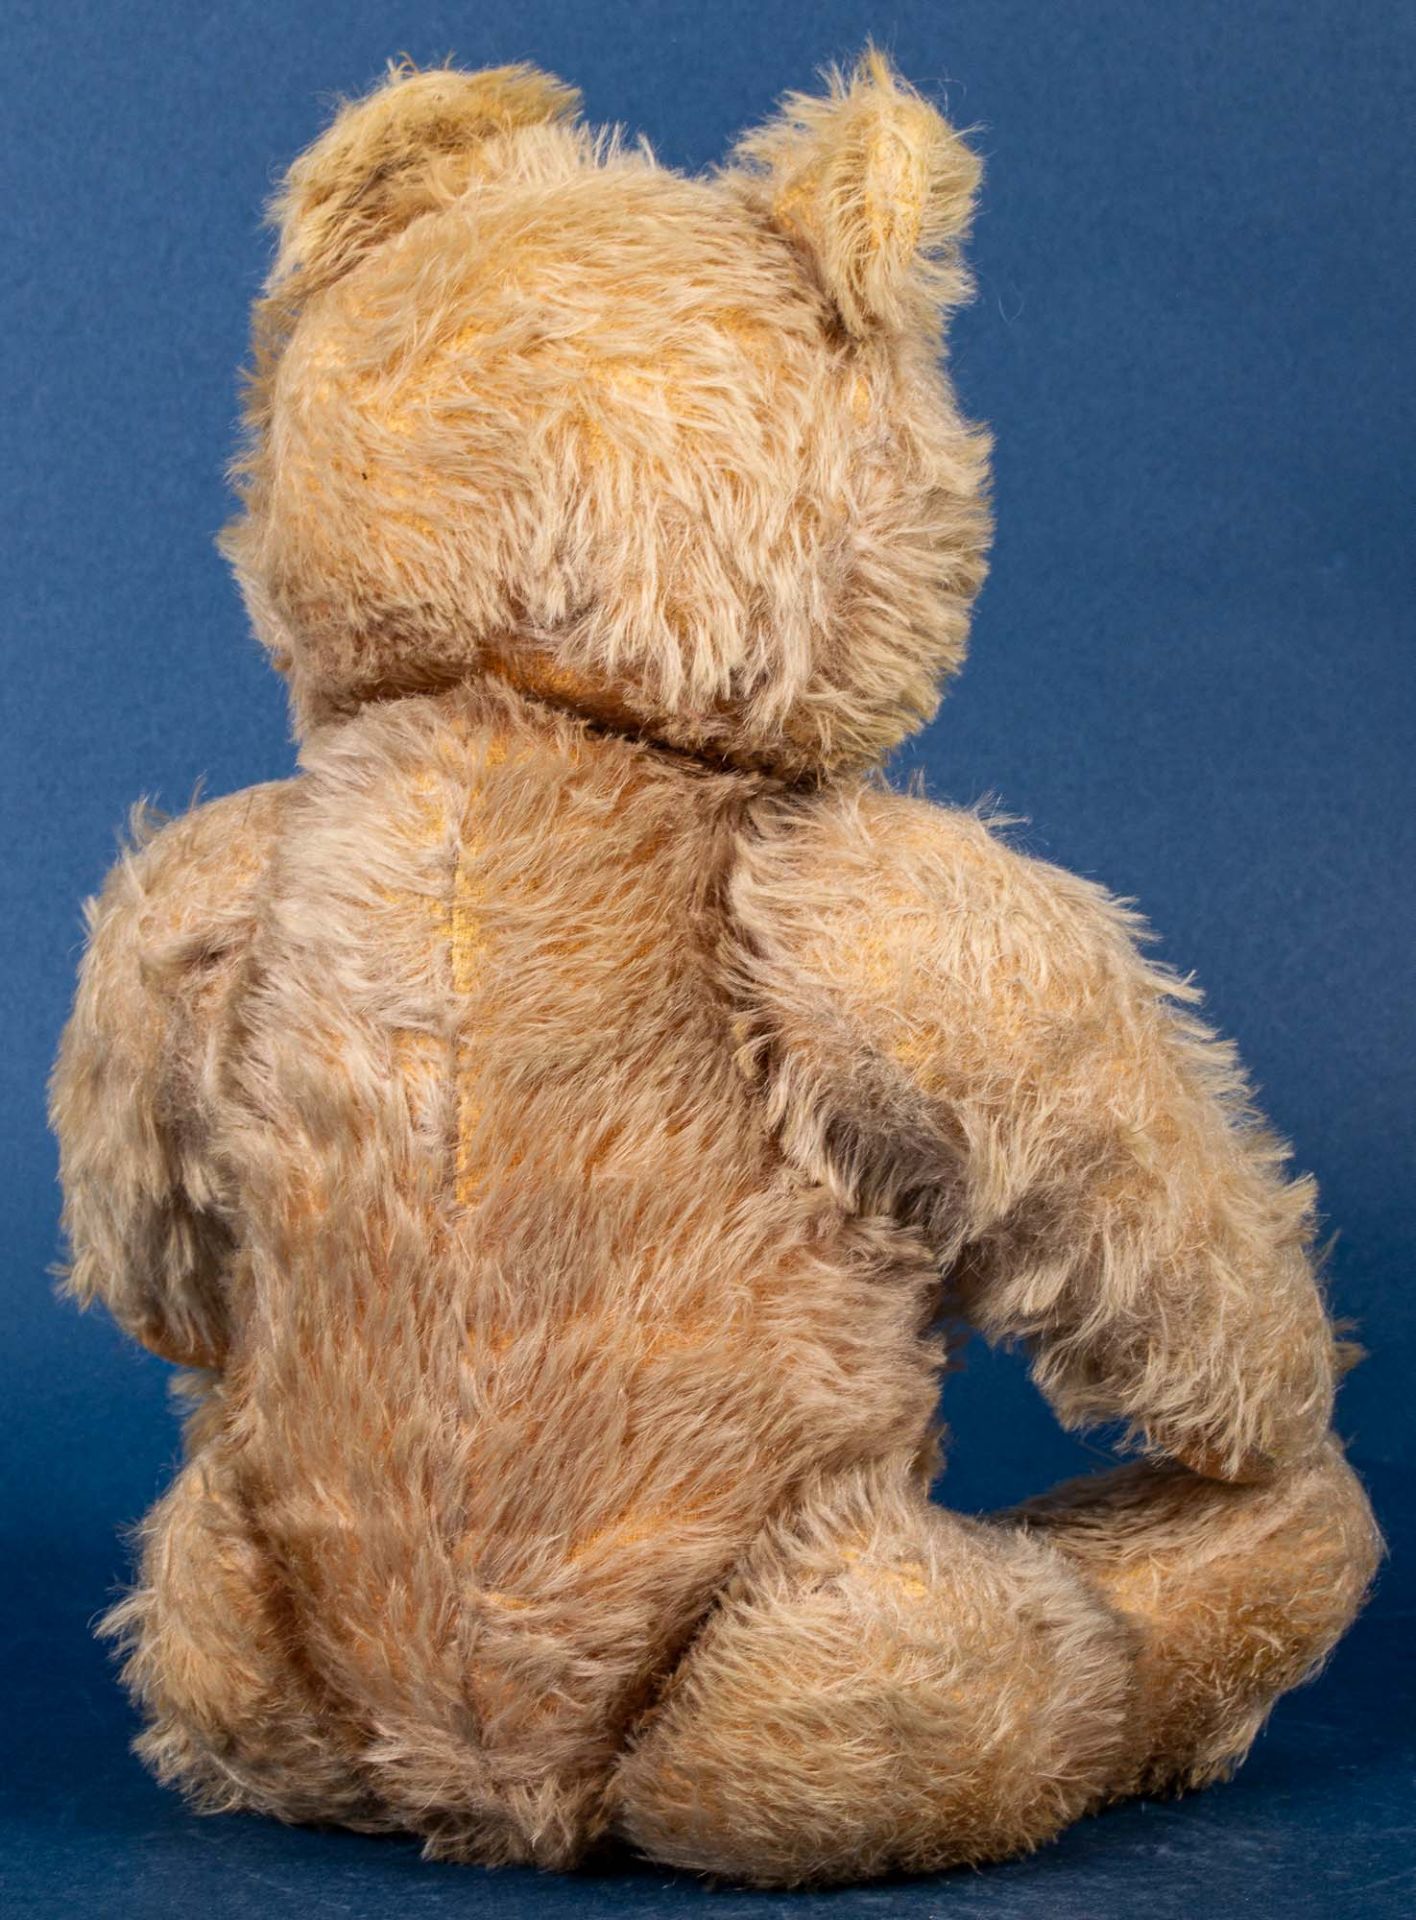 Alter STEIFF - TEDDY, gelblicher Mohairplüsch, wohl 1950er Jahre, Höhe ca. 40 c - Image 2 of 6